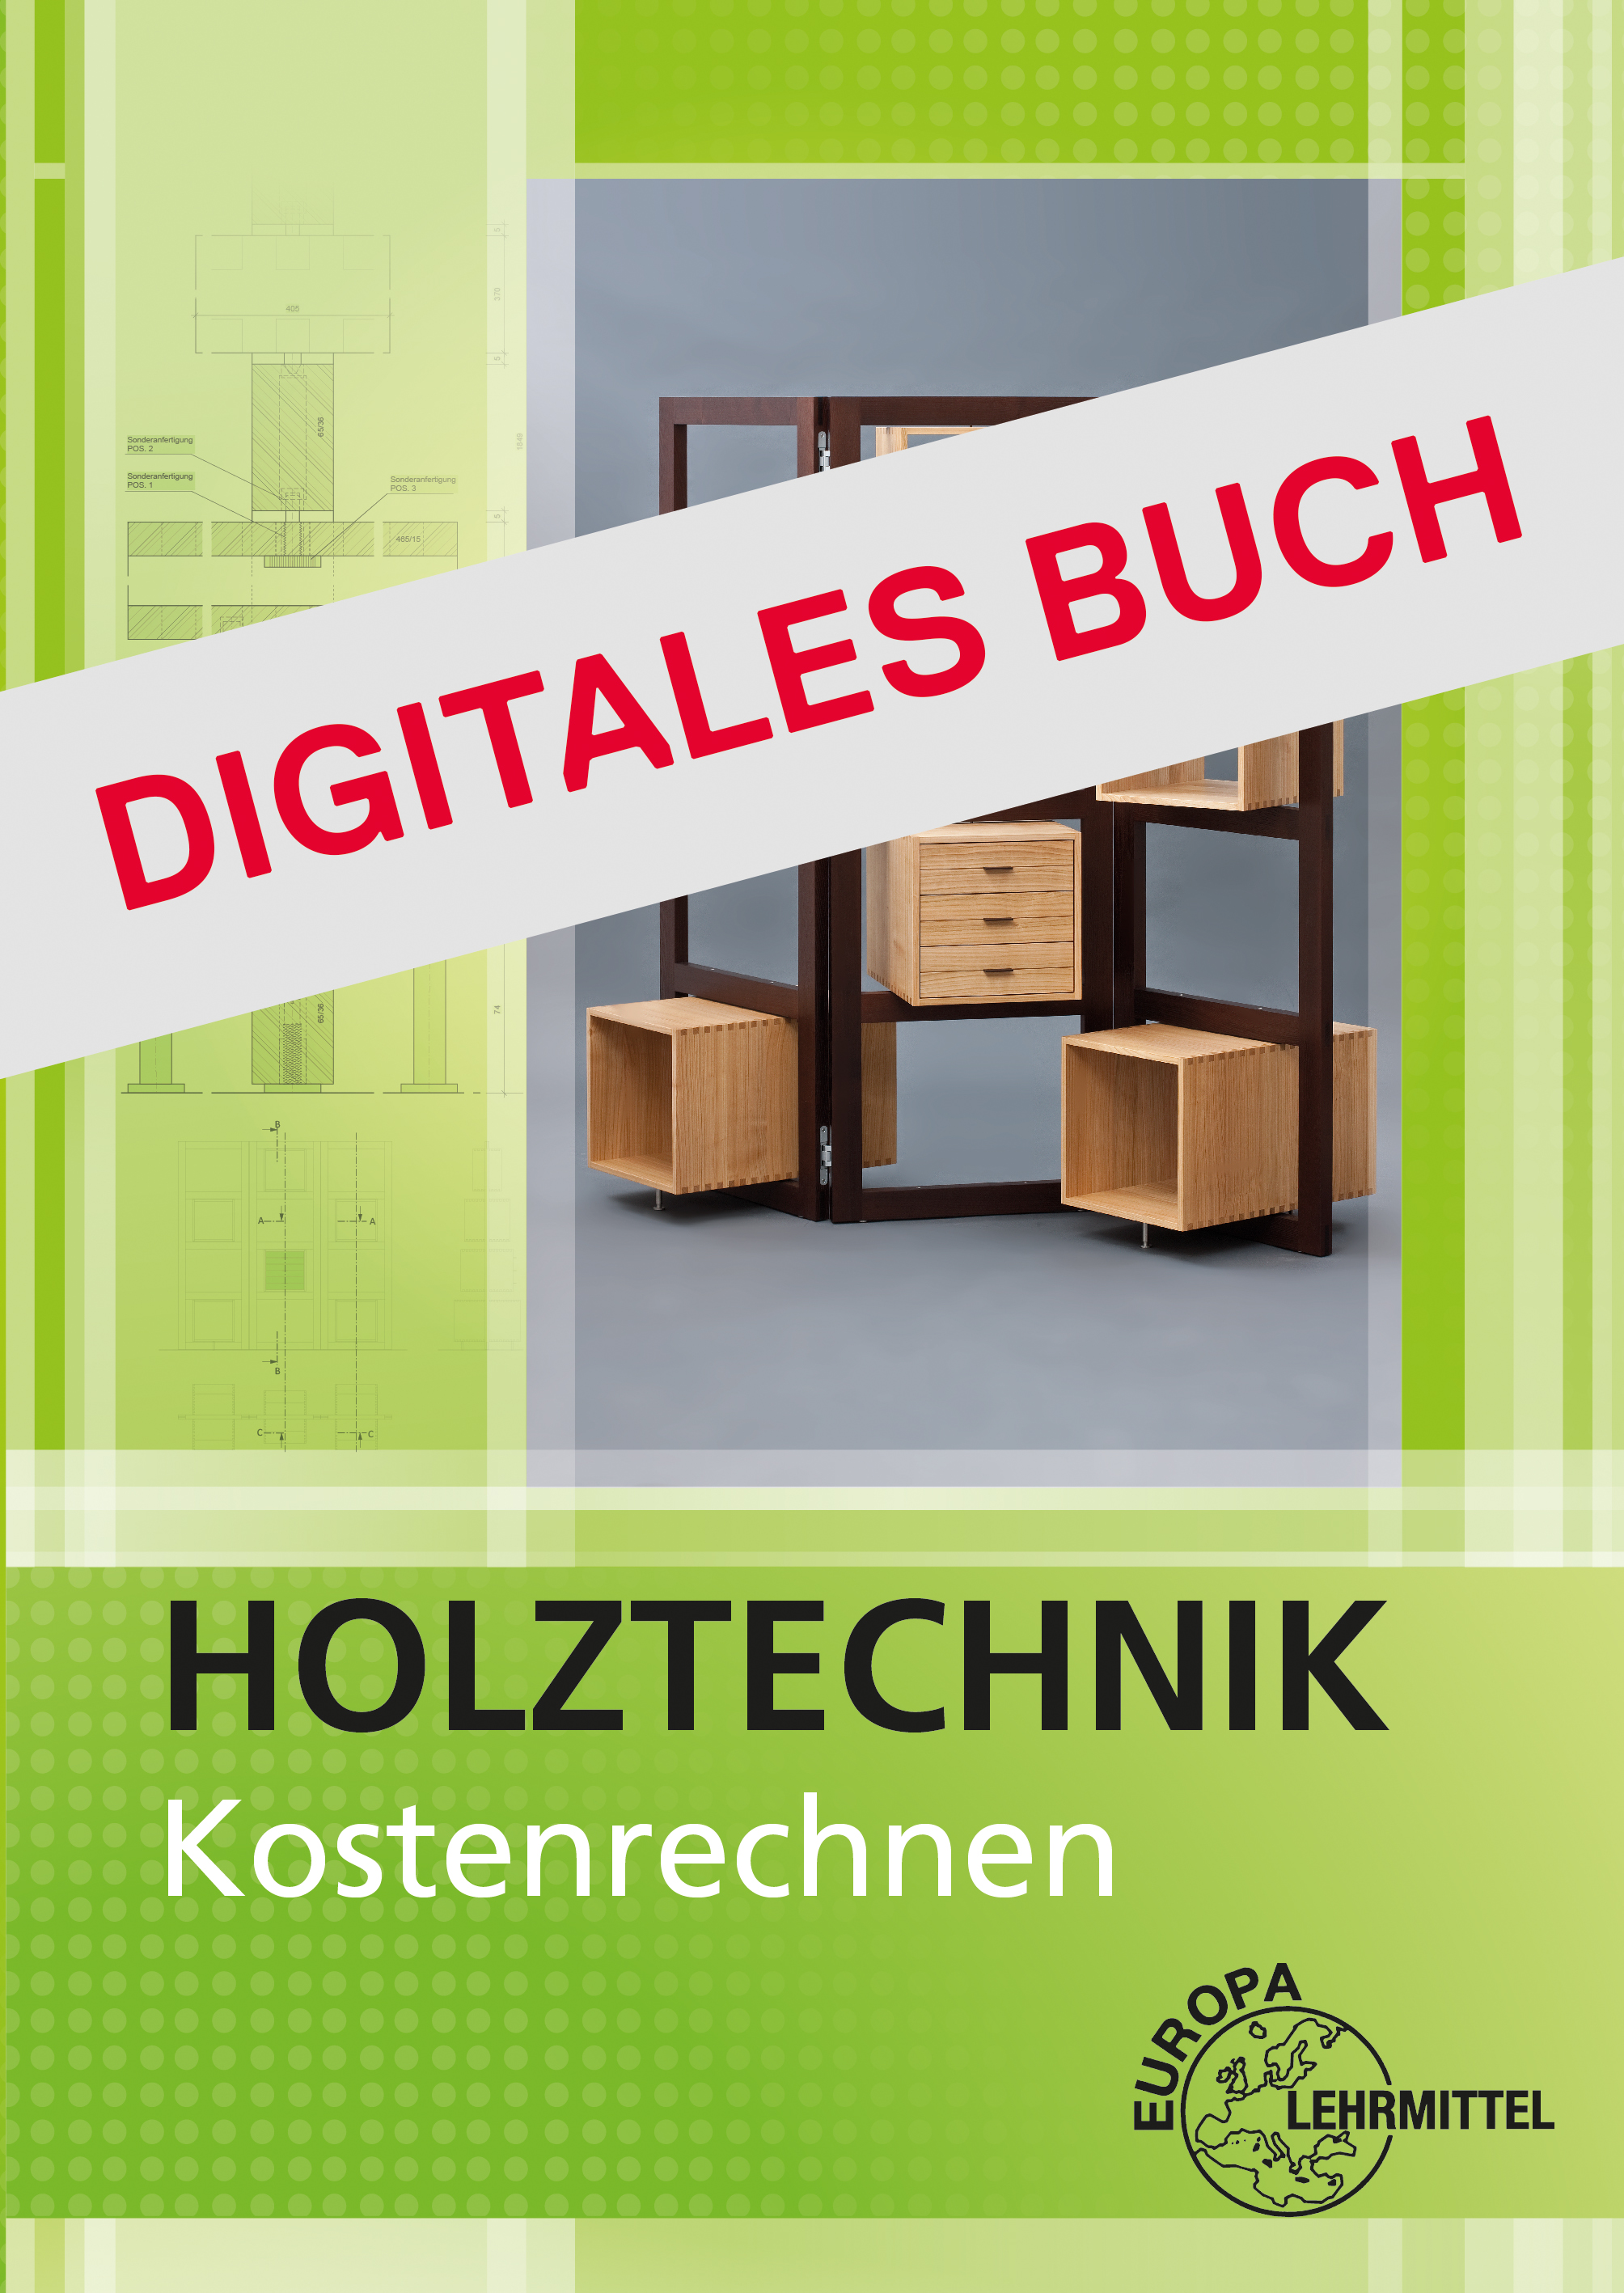 Kostenrechnen Holztechnik - Digitales Buch